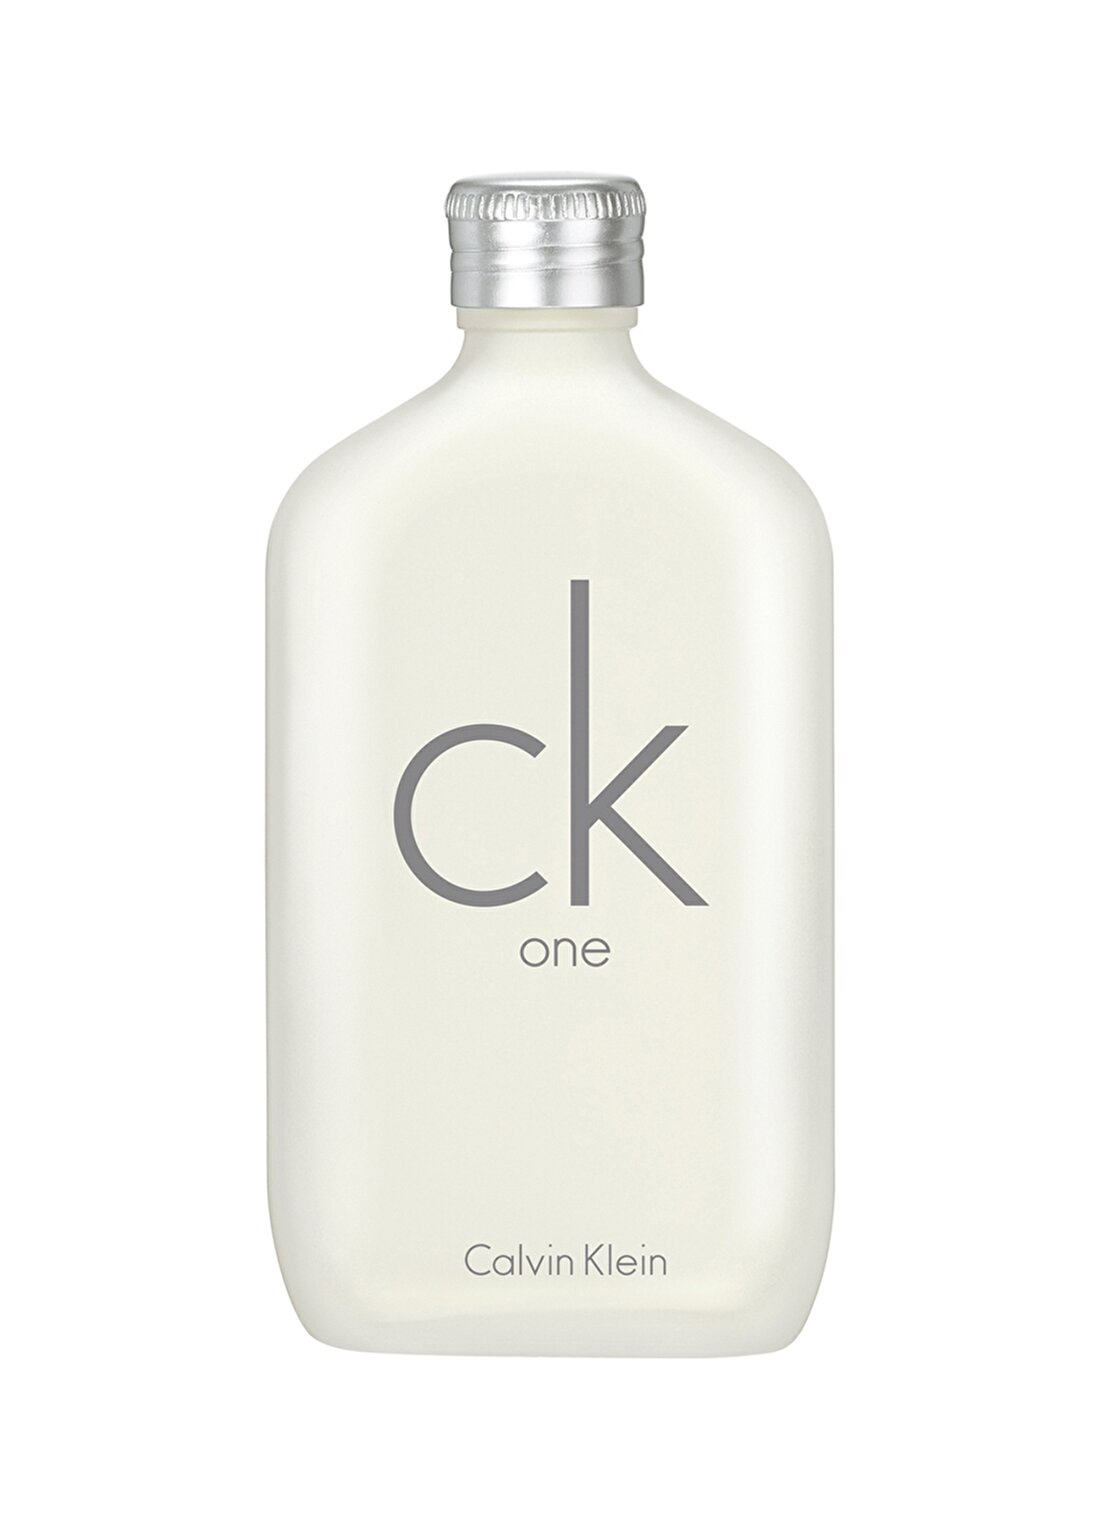 Calvin Klein One Edt 50 Ml Kadın Parfüm